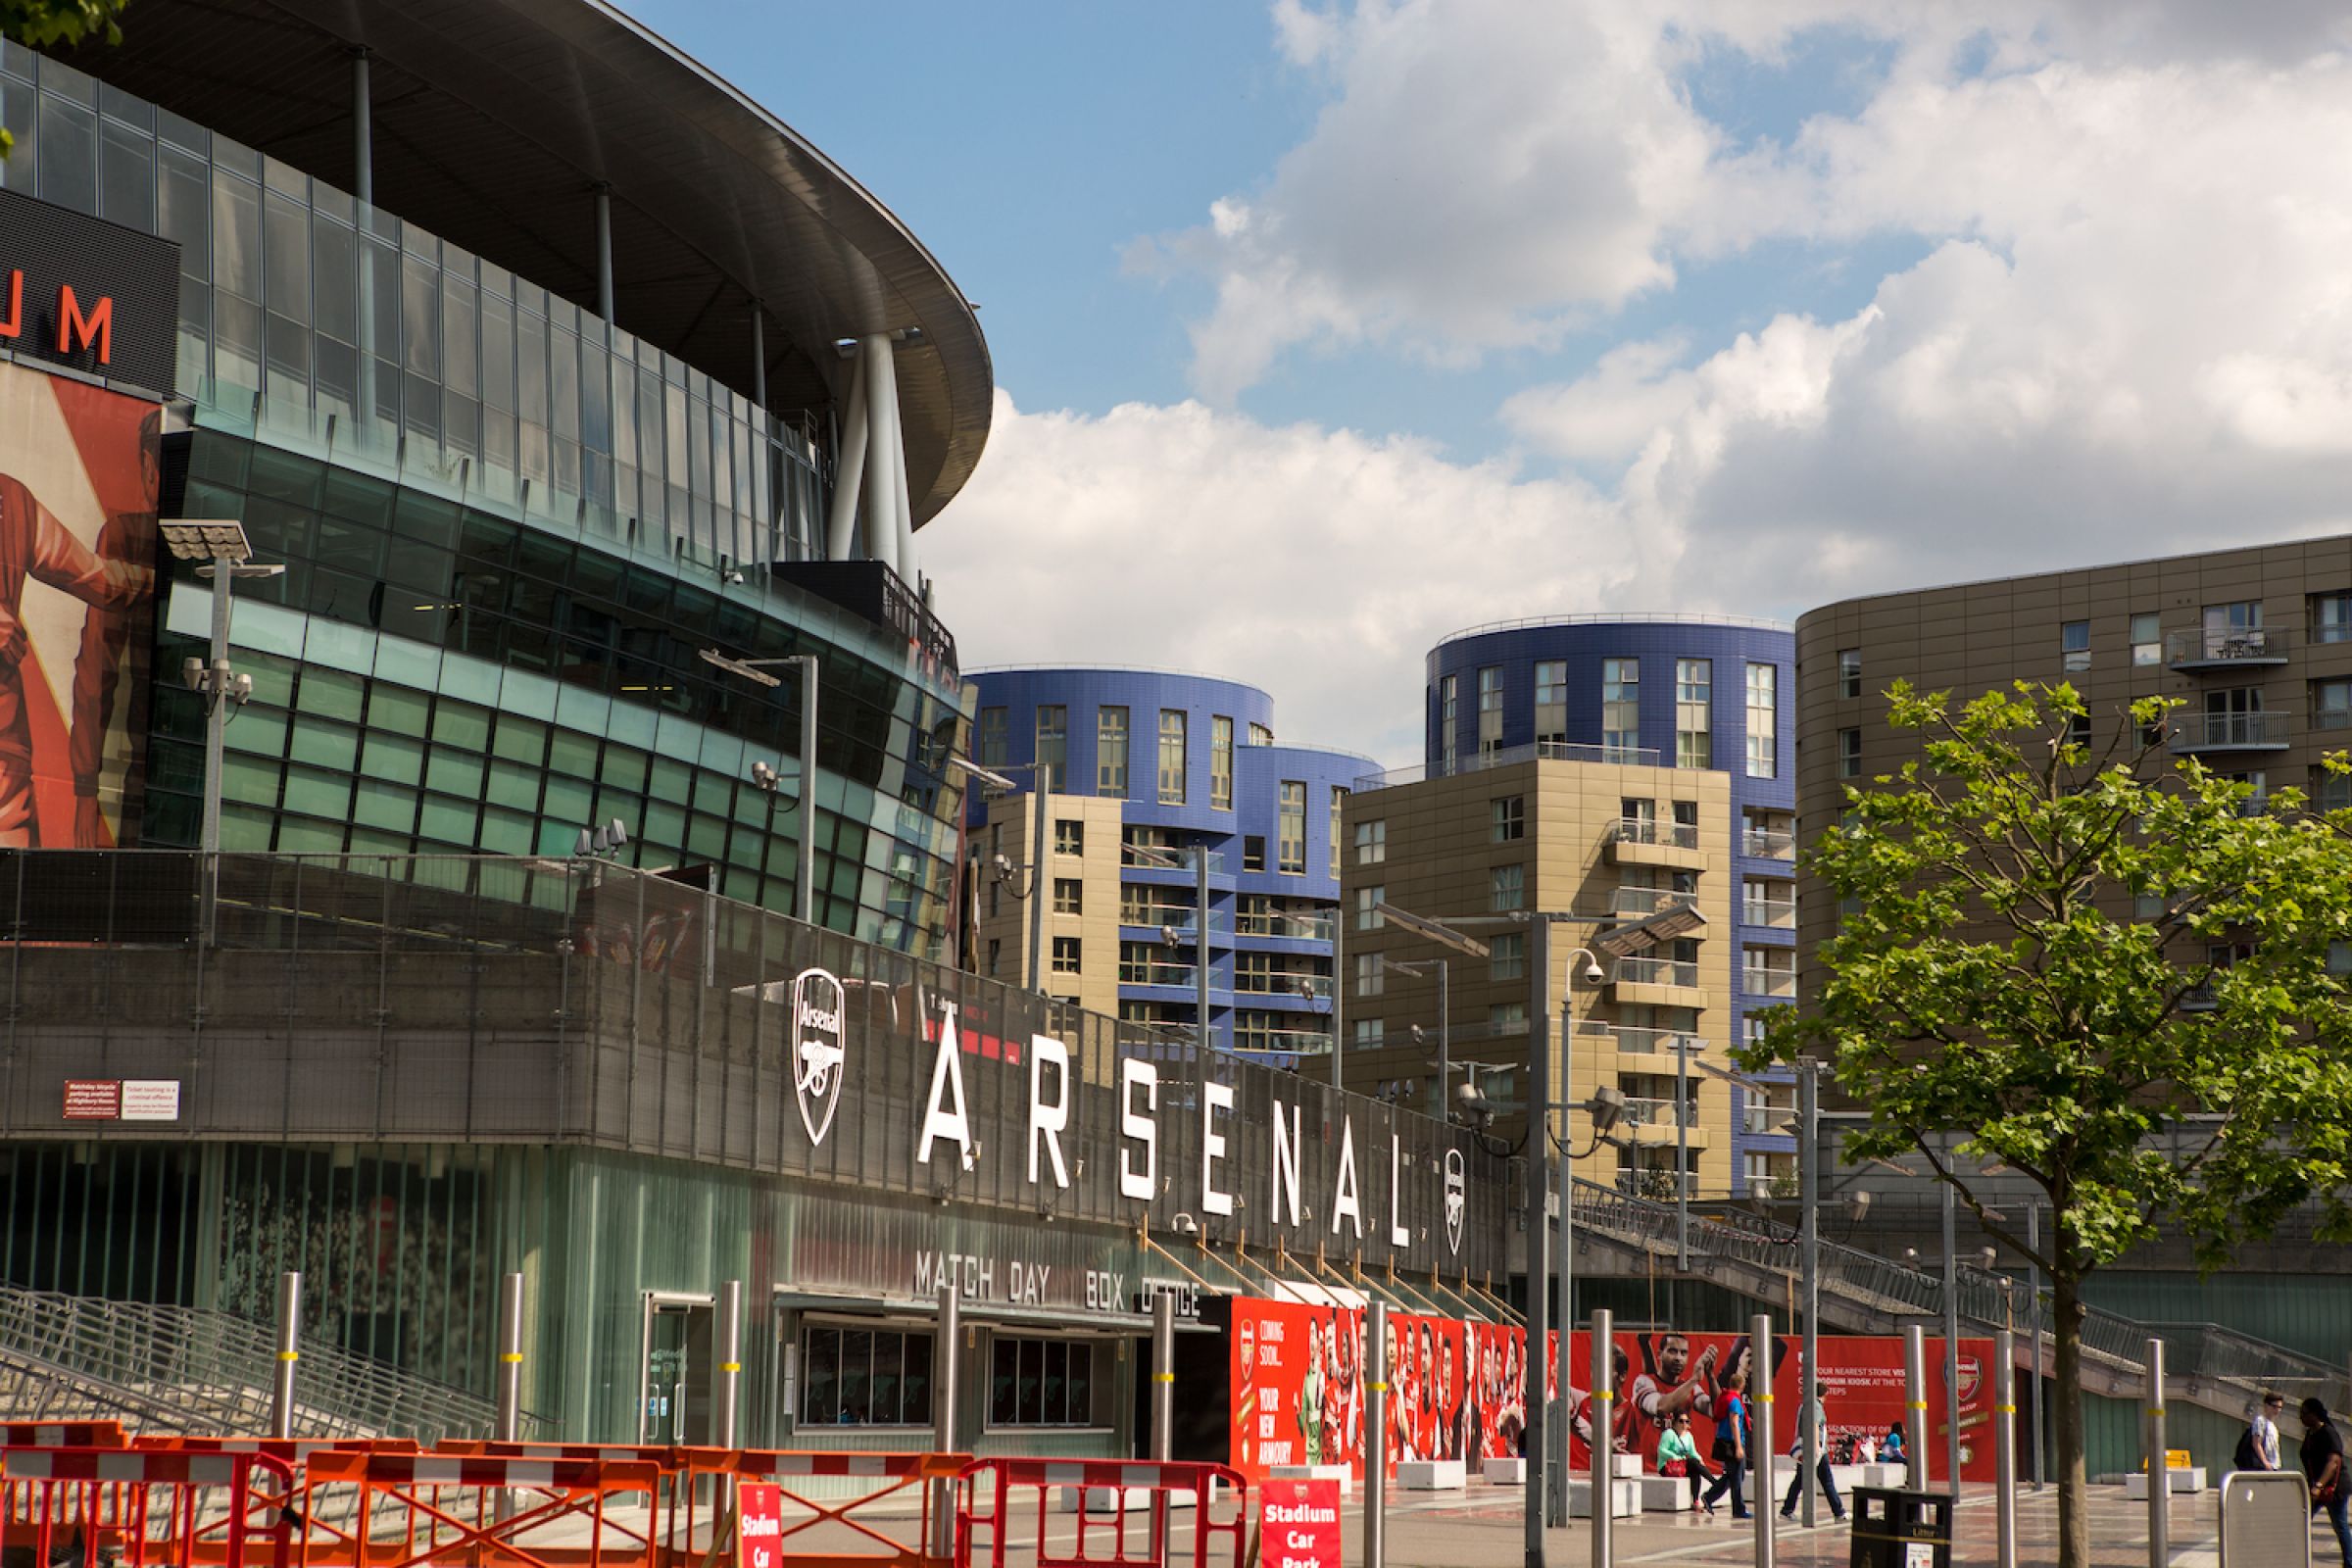 Eingang des Emirates Stadiums mit Arsenal Logo und weitere Gebäude